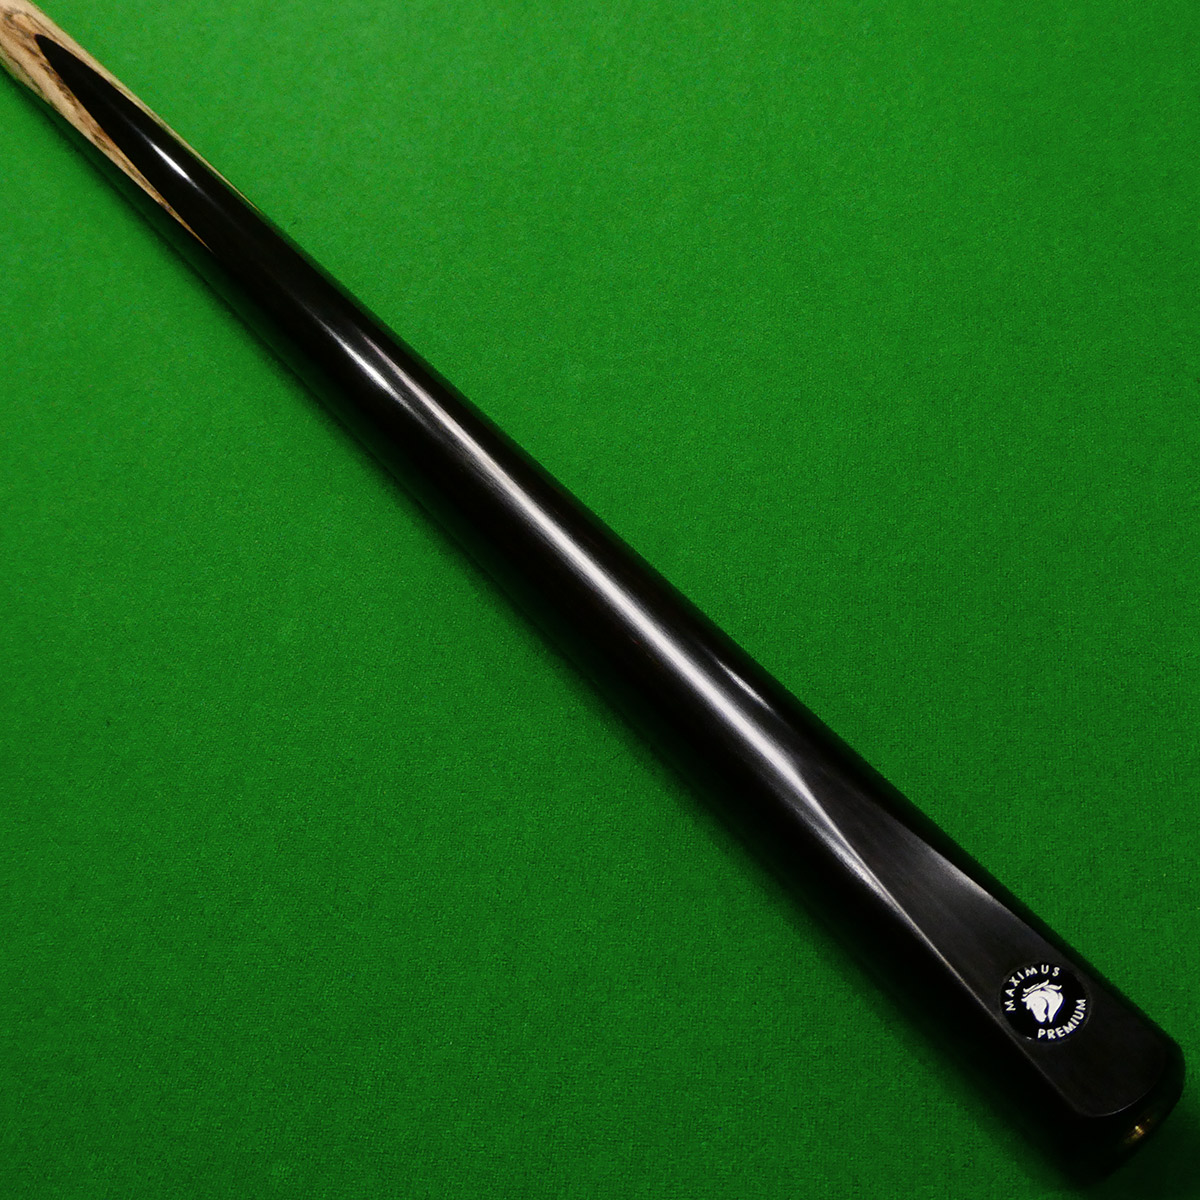 1pc Maximus Premium Snooker cue - Premium Ash shaft (BB)